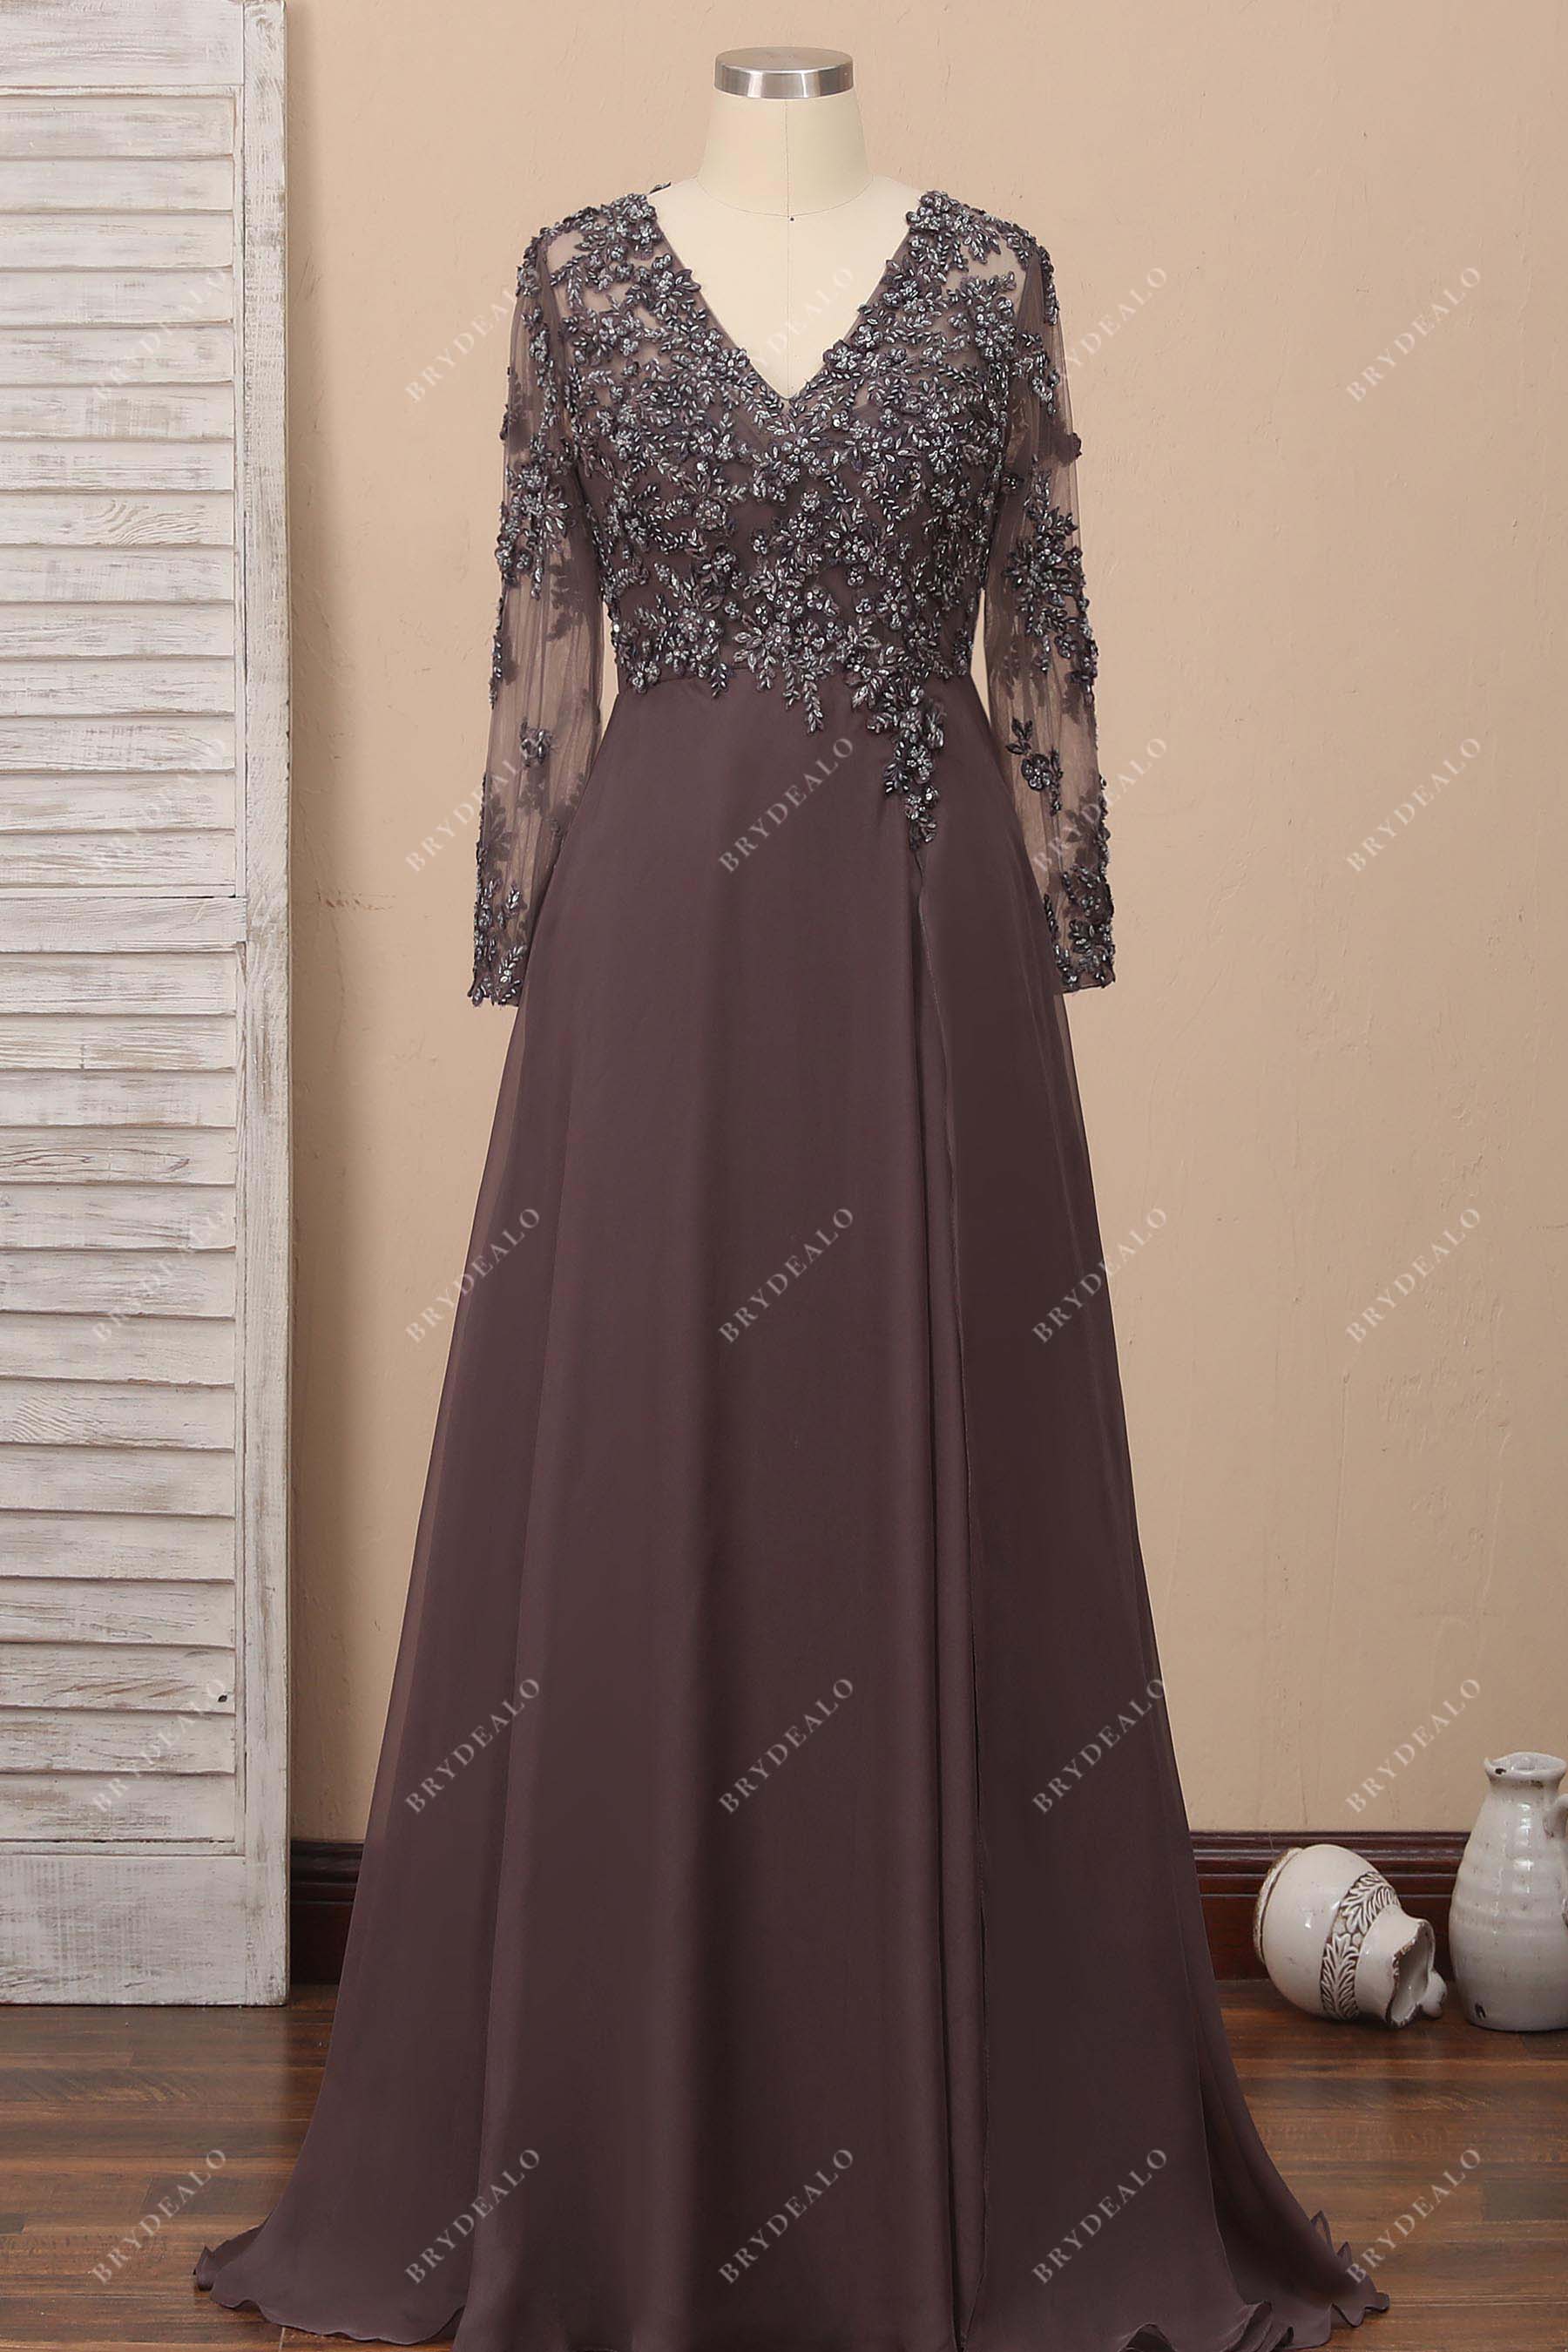 v-neck long sleeves brown beaded prom dress